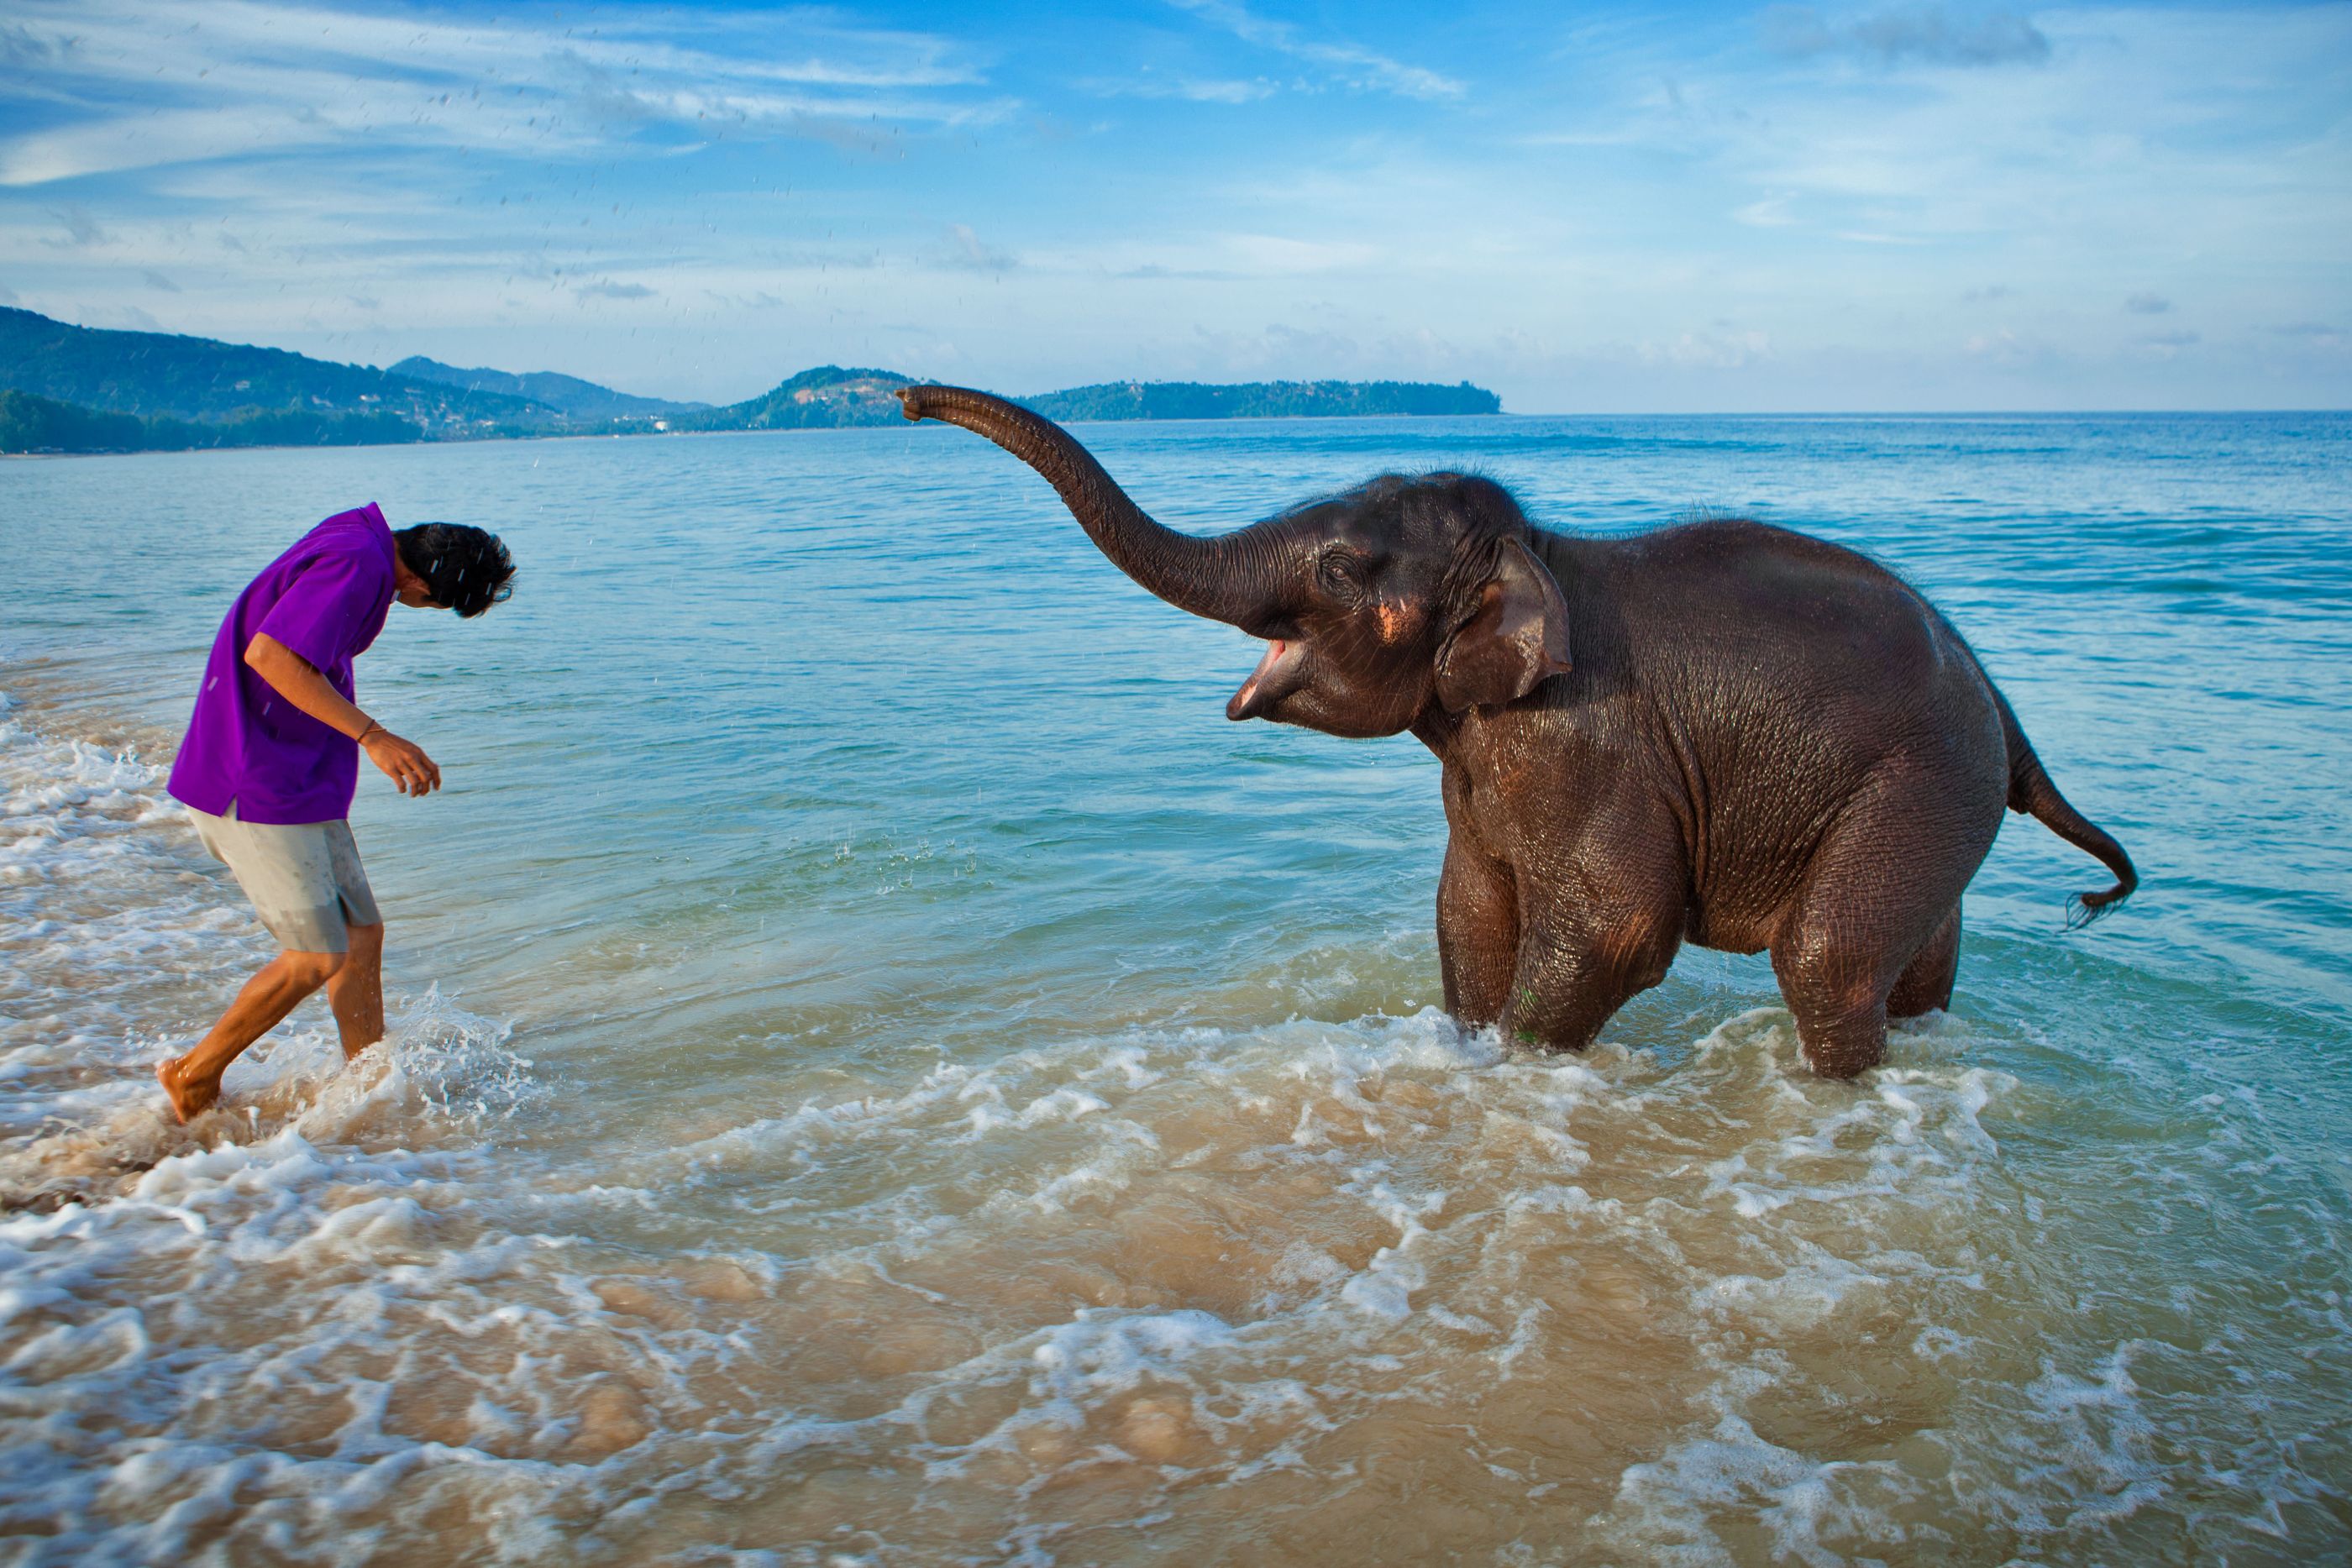 happy elephant in the water at angsana phuket, thailand